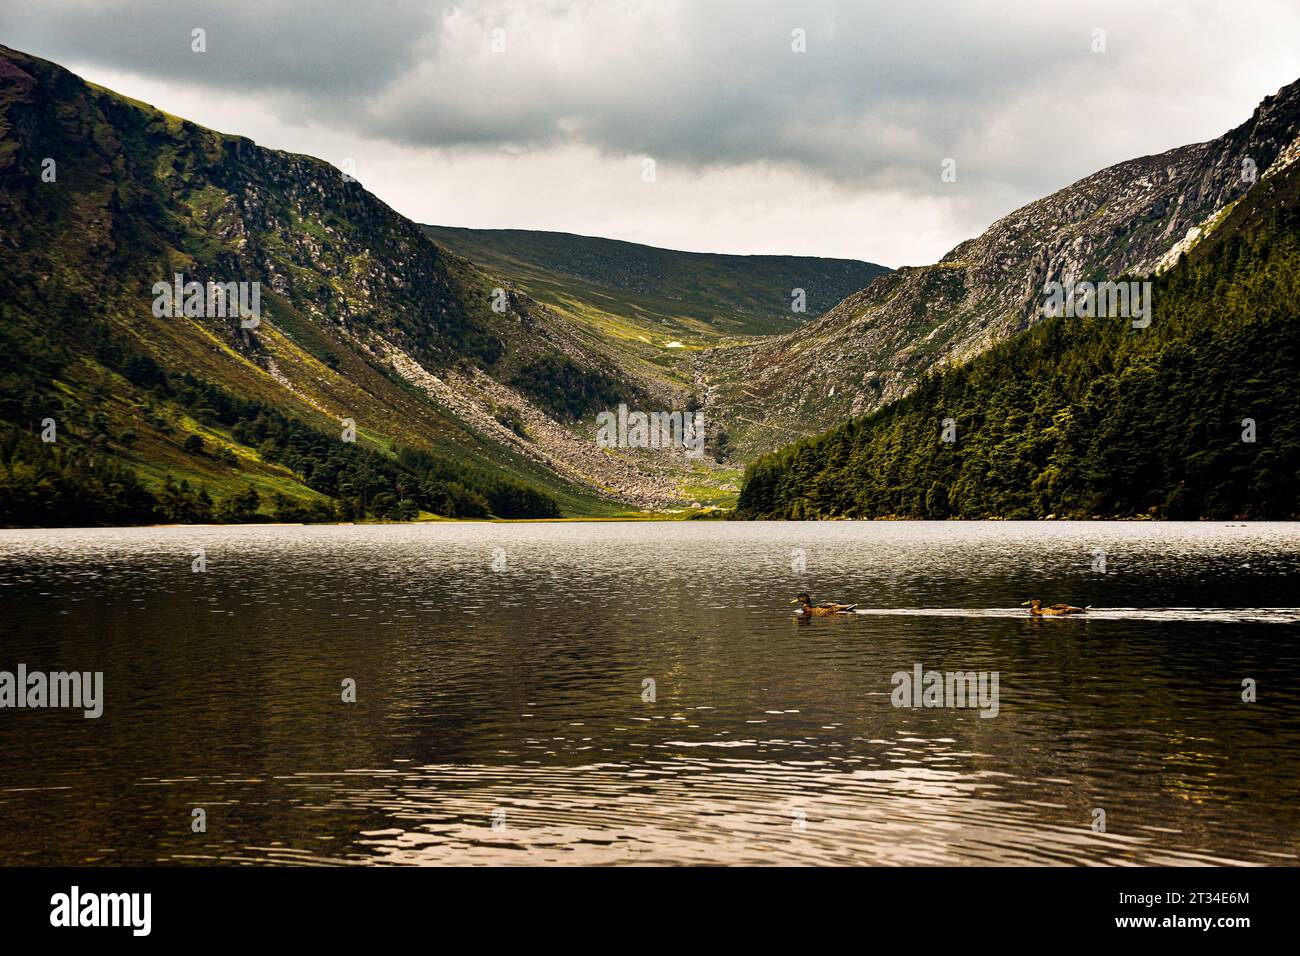 Belle destination touristique, Glendalough Lake dans le comté de Wicklow, Irlande. Banque D'Images